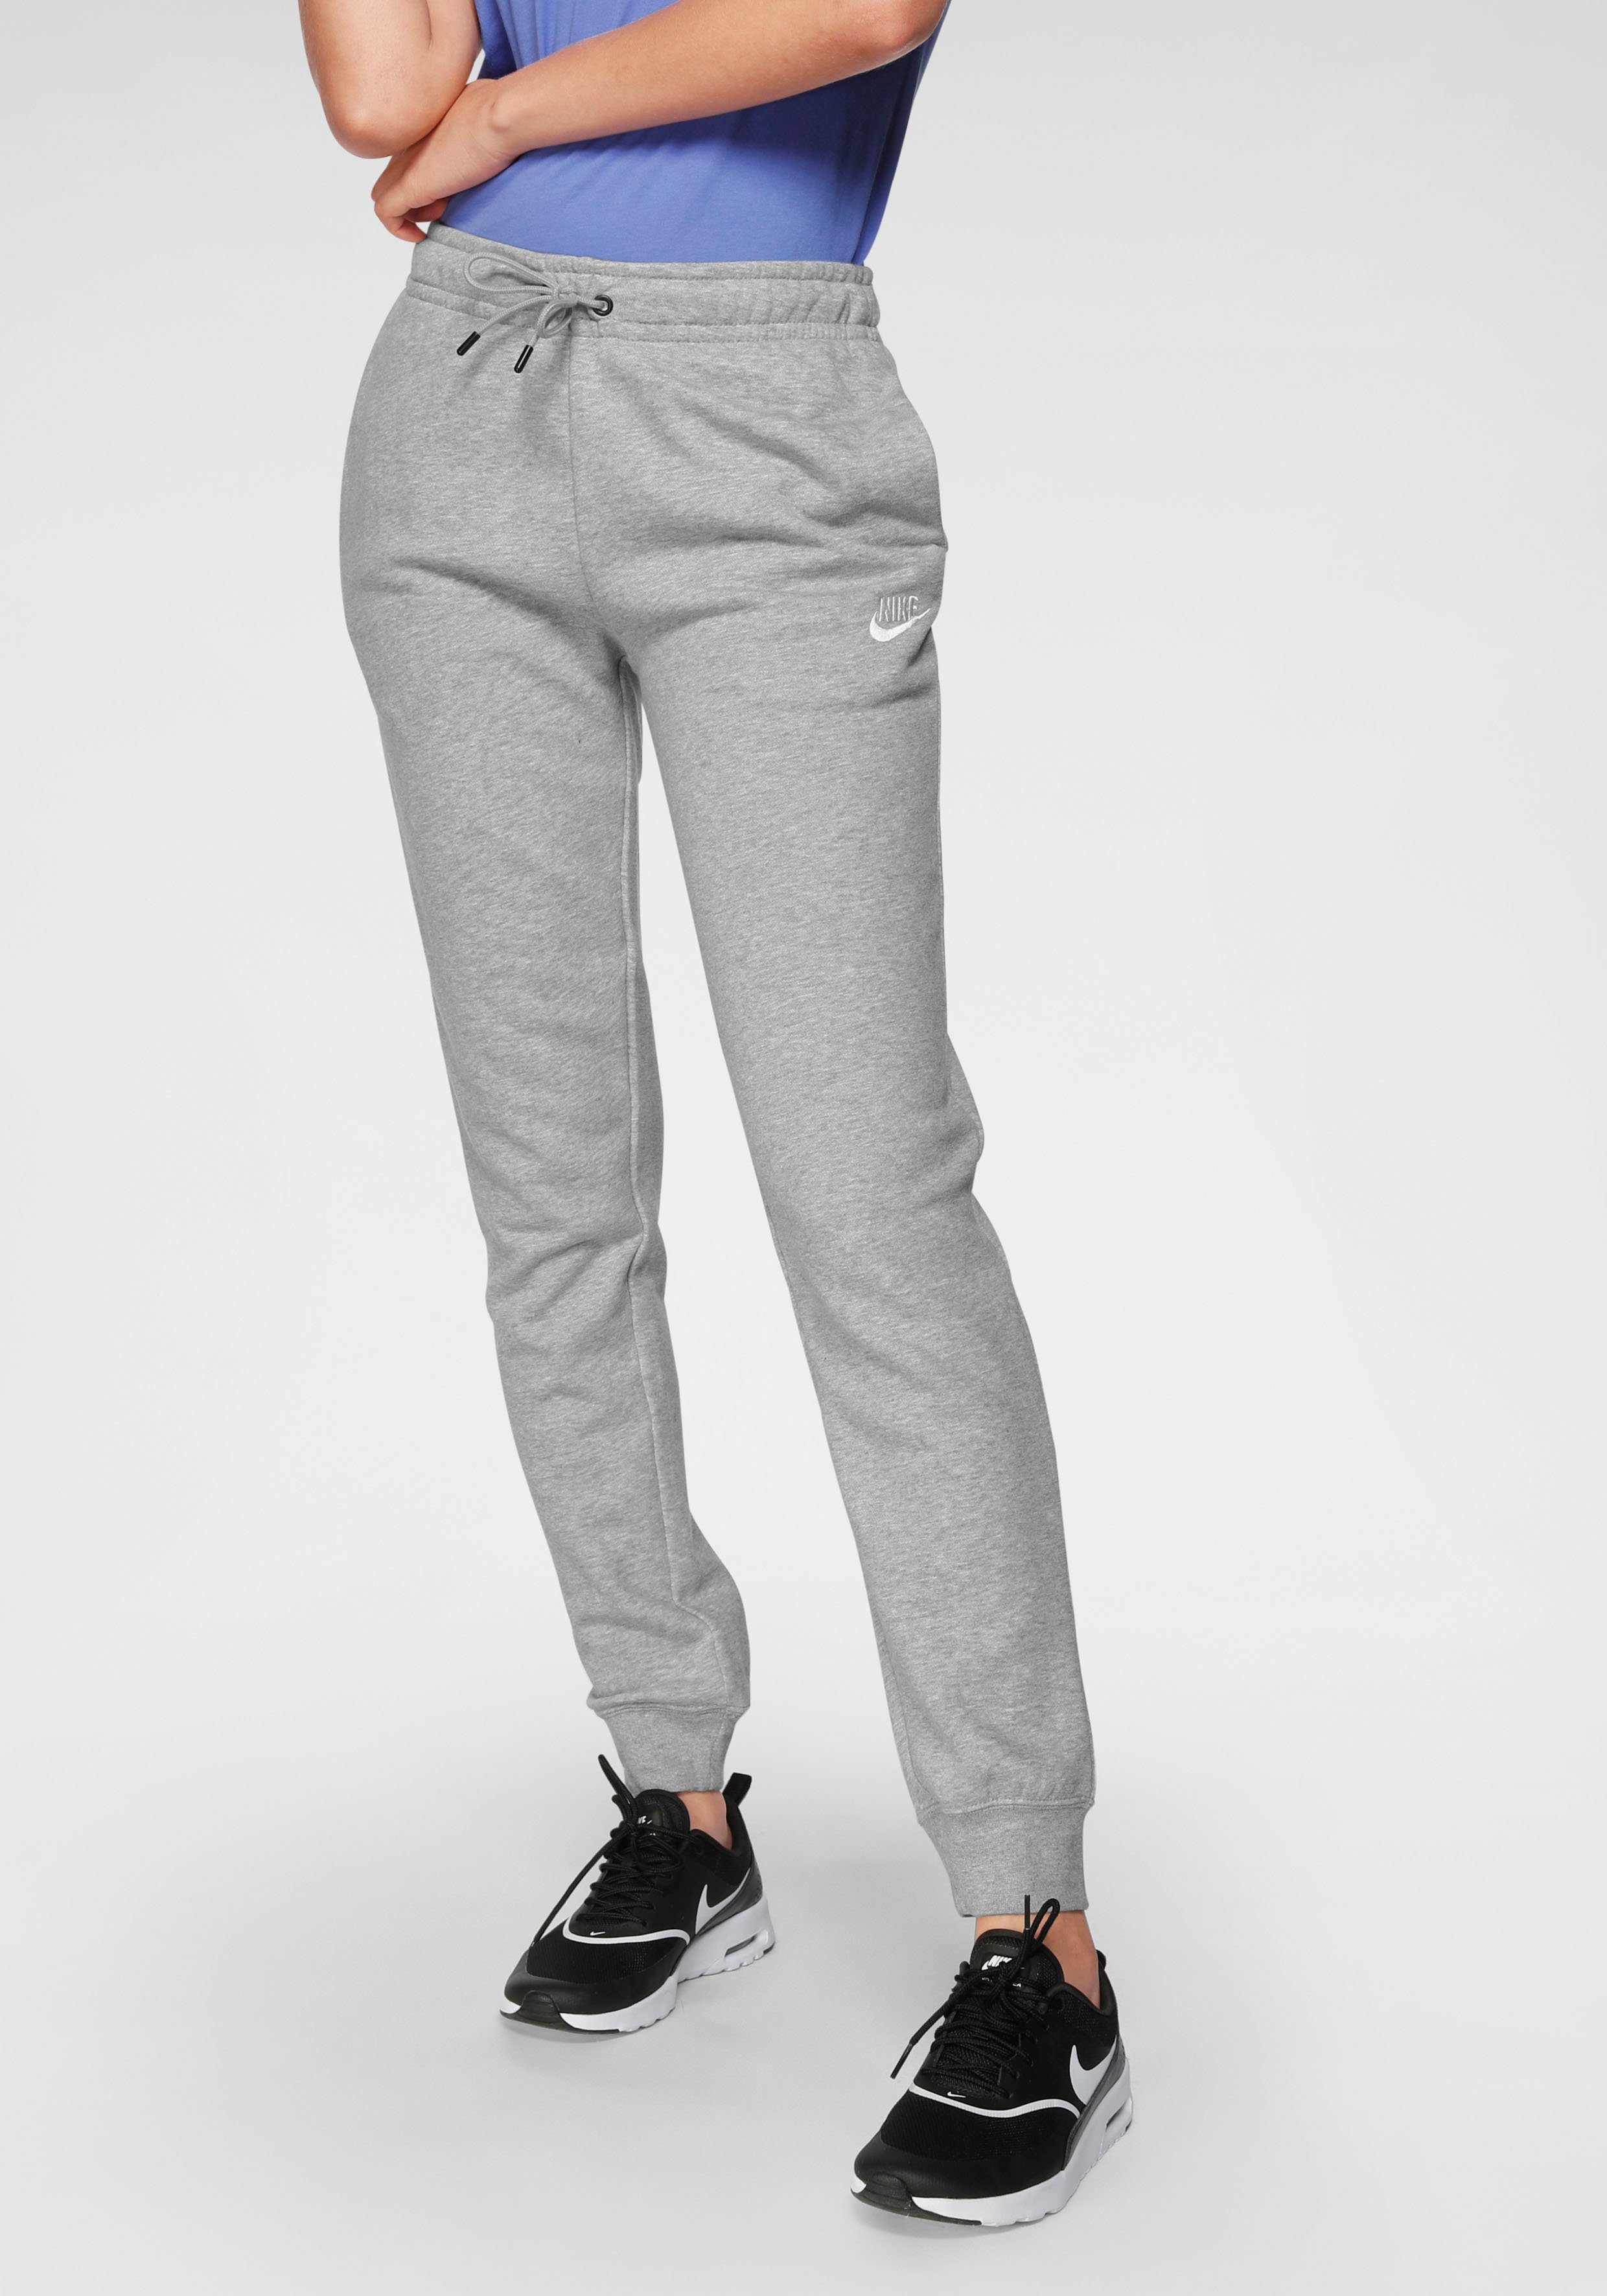 Nike Sportswear Jogginghose »ESSENTIAL WOMENS FLEECE PANTS« online kaufen |  OTTO